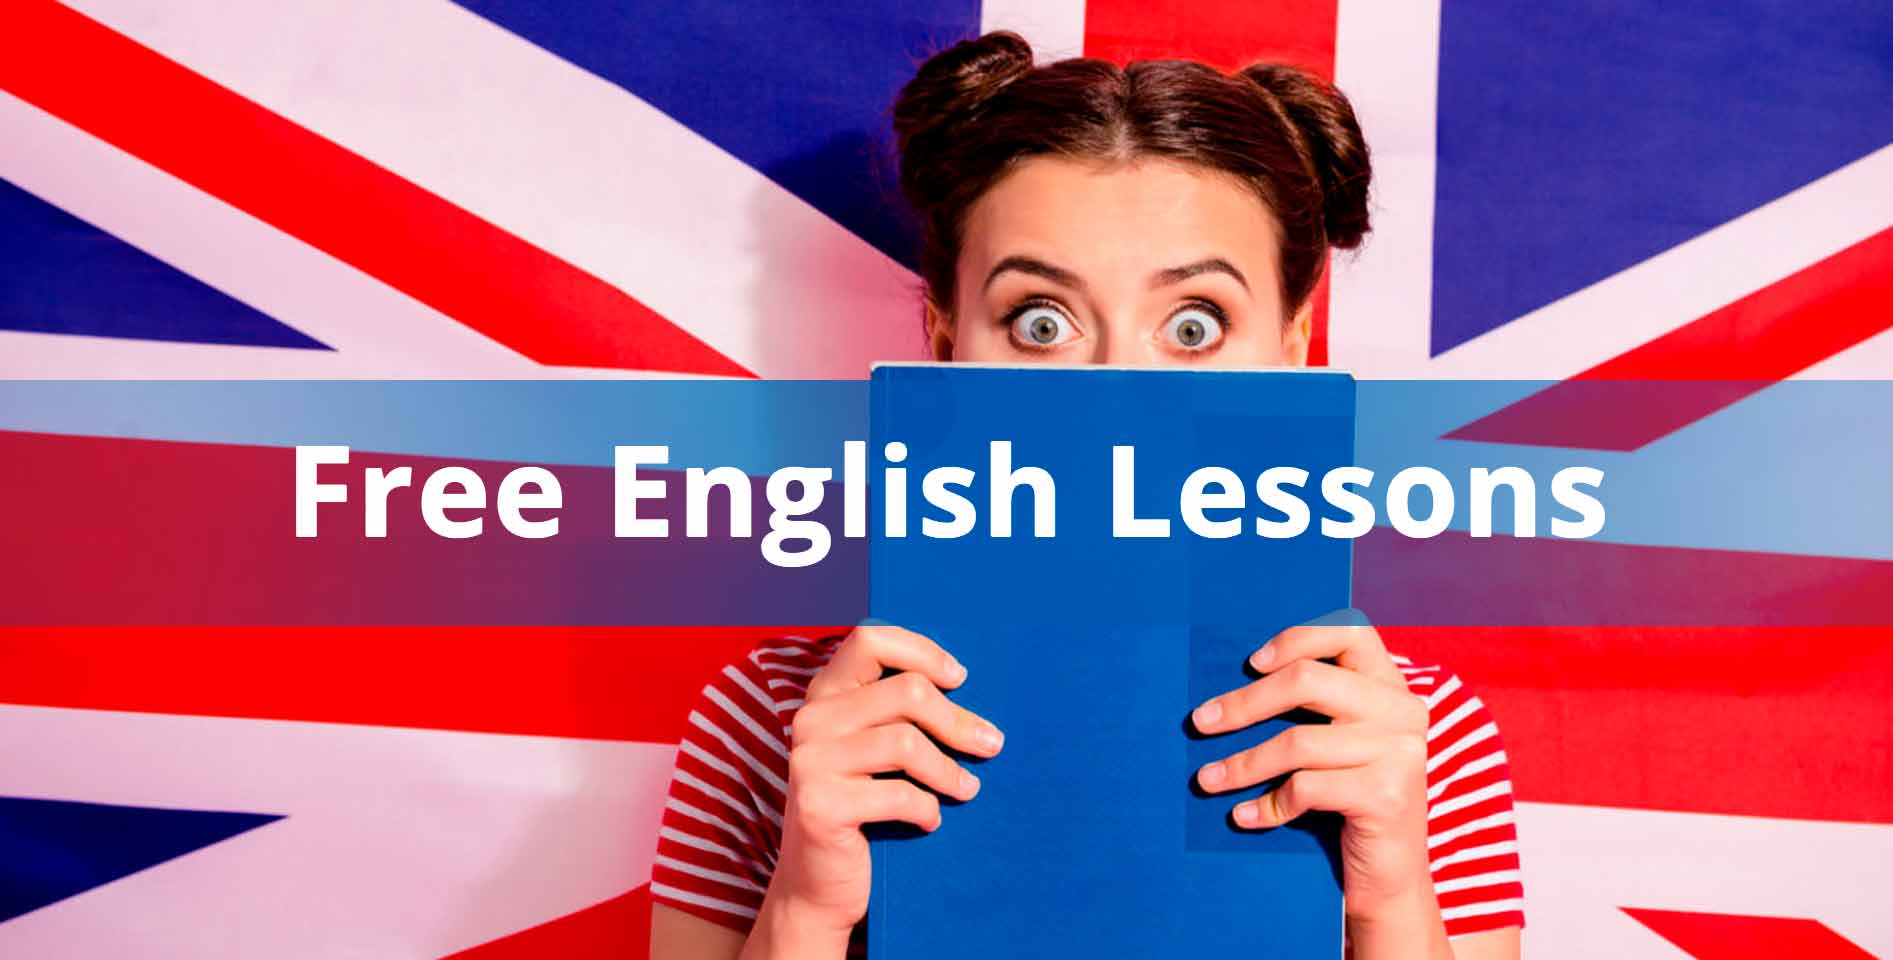 engVid — Free English Lessons